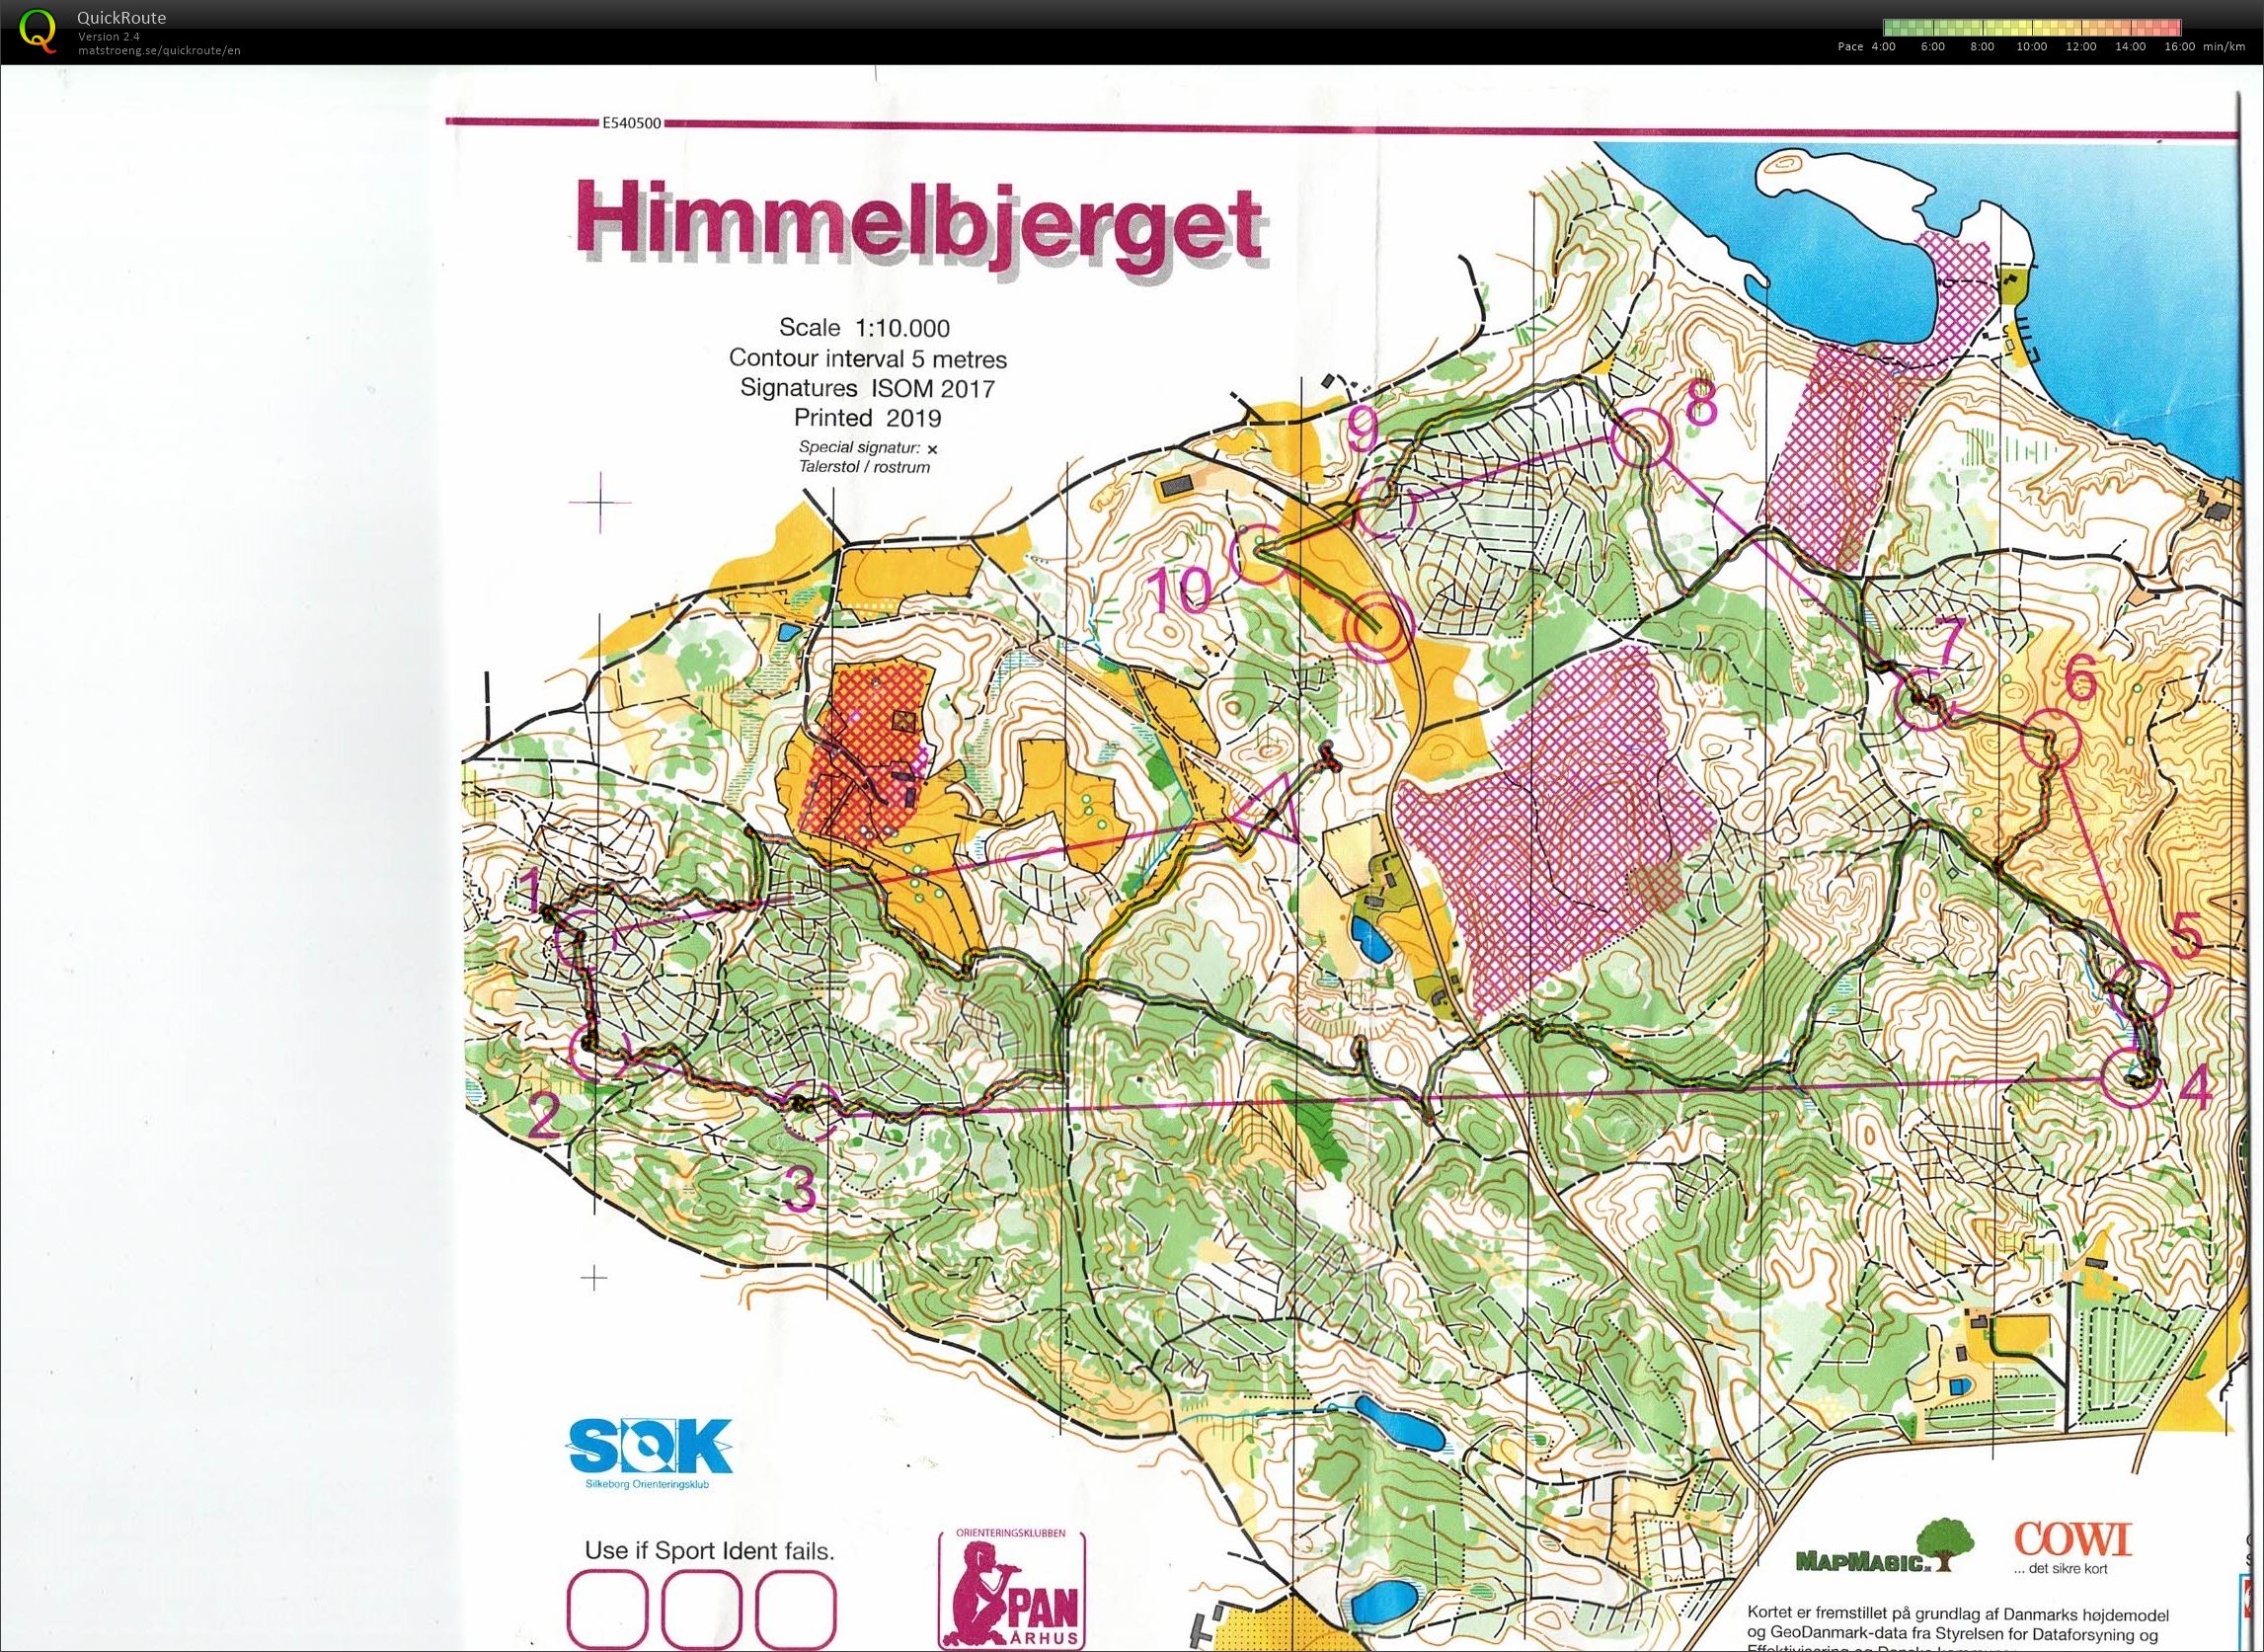 Himmelbjerget, JWOC testløb, Bane Åben 4, Pia Gade, 090619 (09.06.2019)